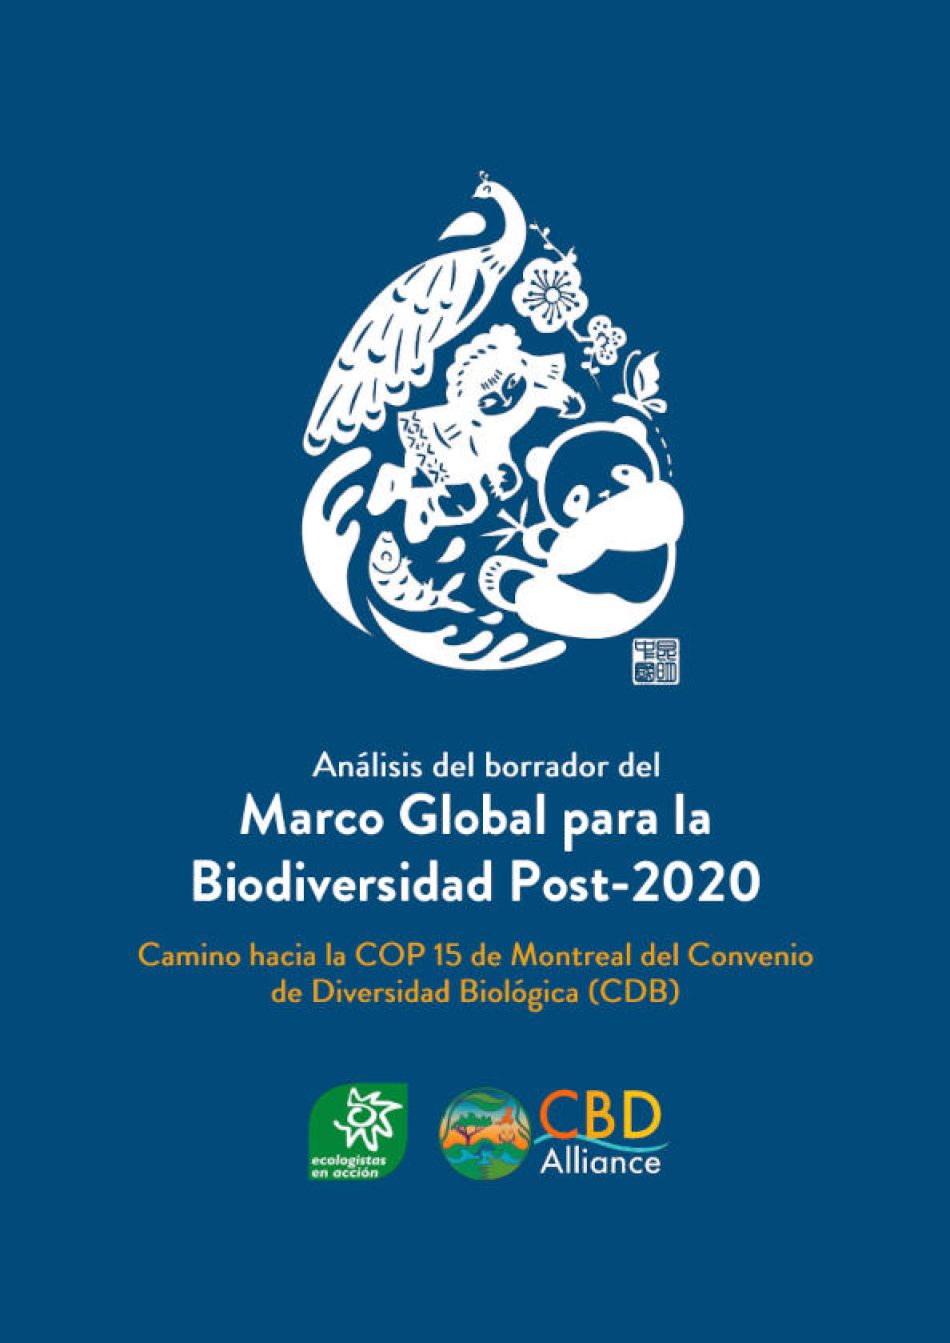 [COP15 Biodiversidad] Analizan el estado de las negociaciones de la Estrategia Mundial de la Biodiversidad 2030